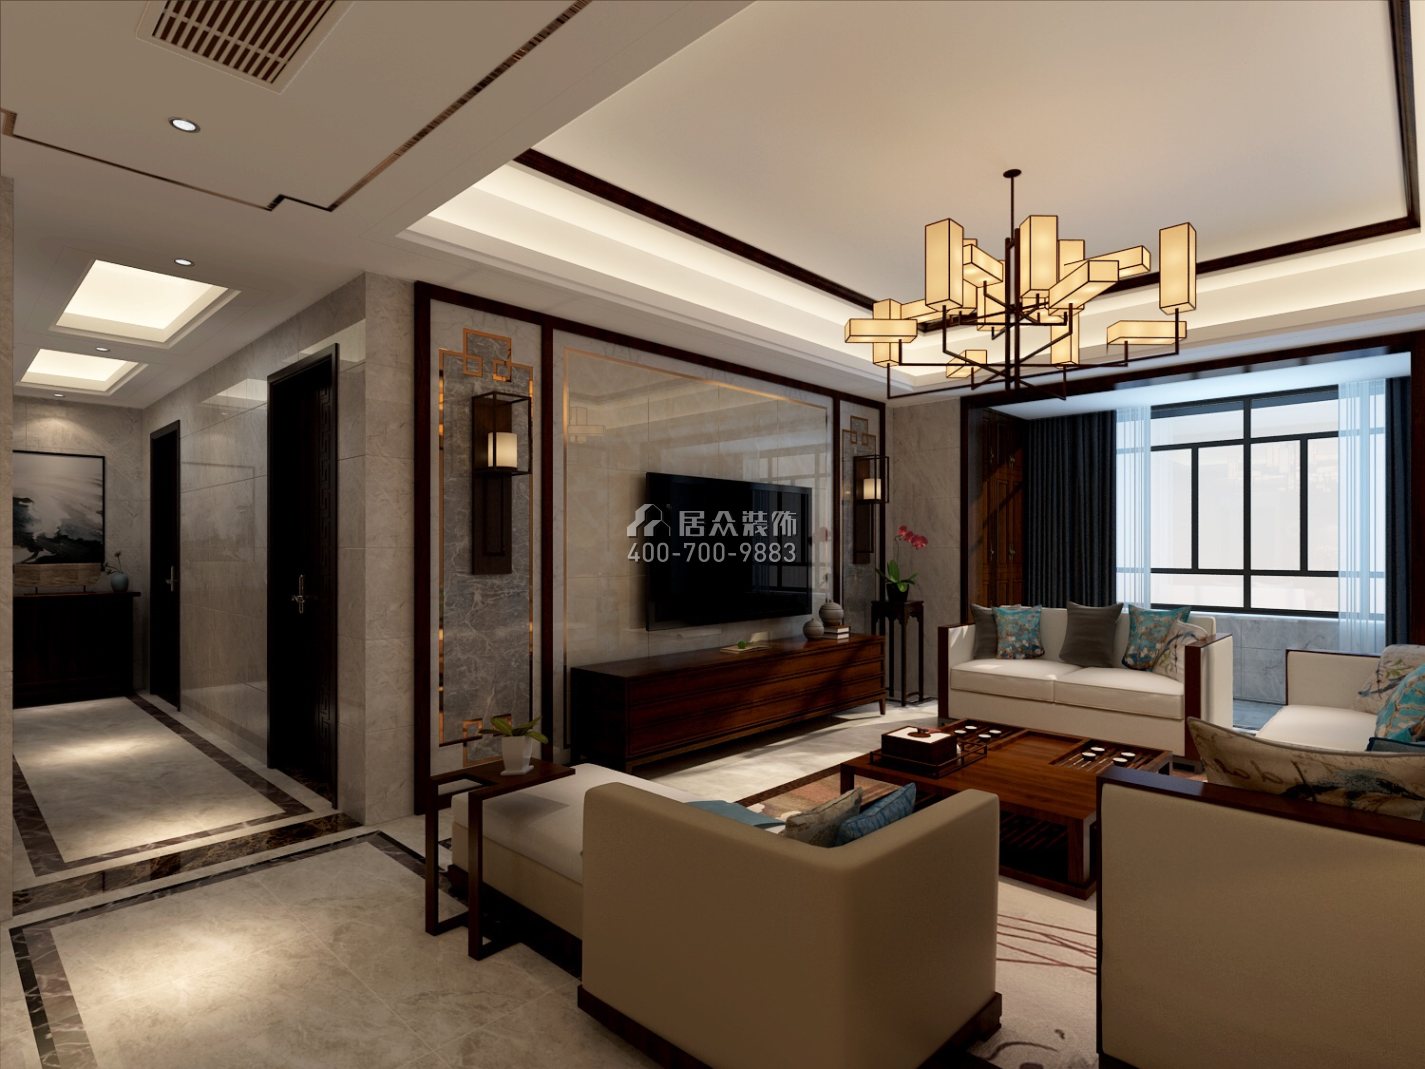 紫御華庭140平方米中式風格平層戶型客廳裝修效果圖